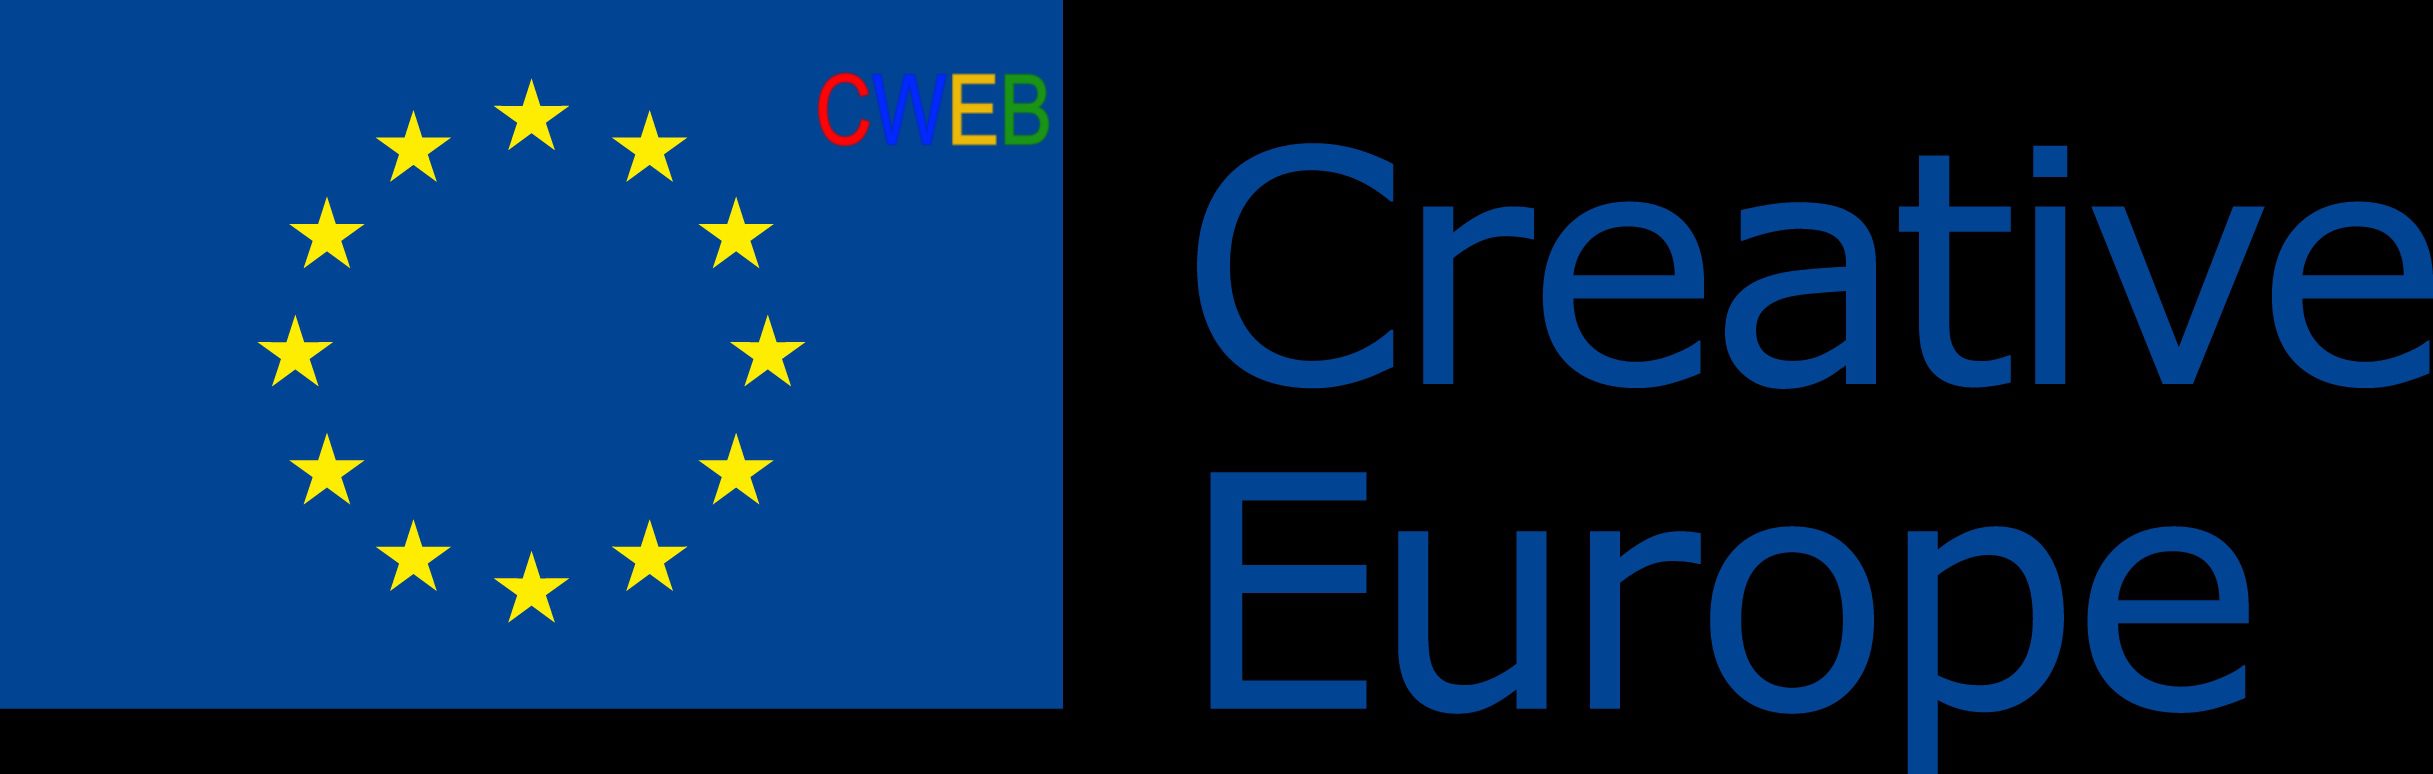 eu-flag-creative-europe_5